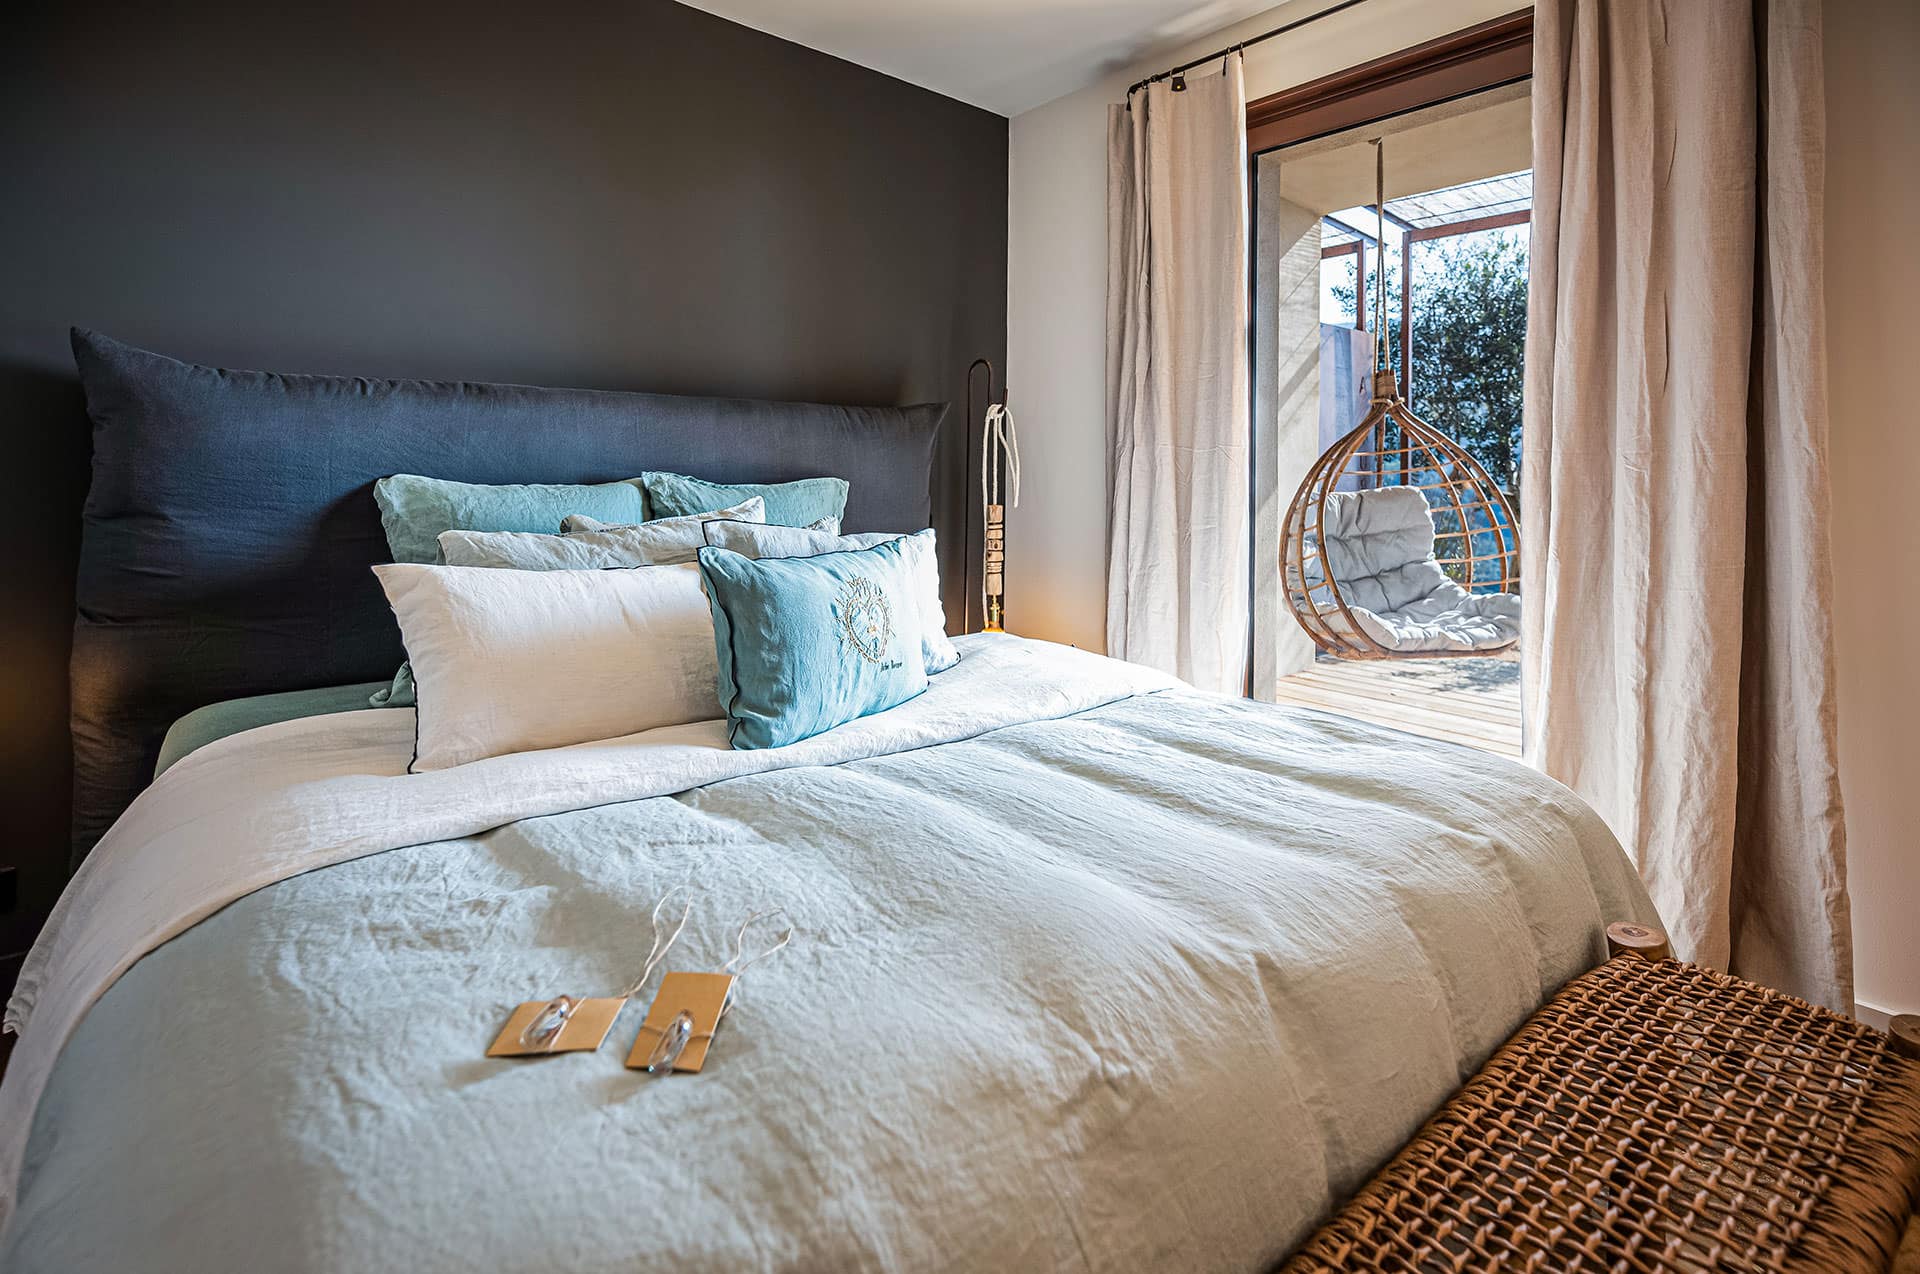 Bed and Breakfast Corse, hébergement chambre hôtes, linge de lit en lin, baladeuse en bois flotté Mare&Luce, fauteuil suspendu en rotin